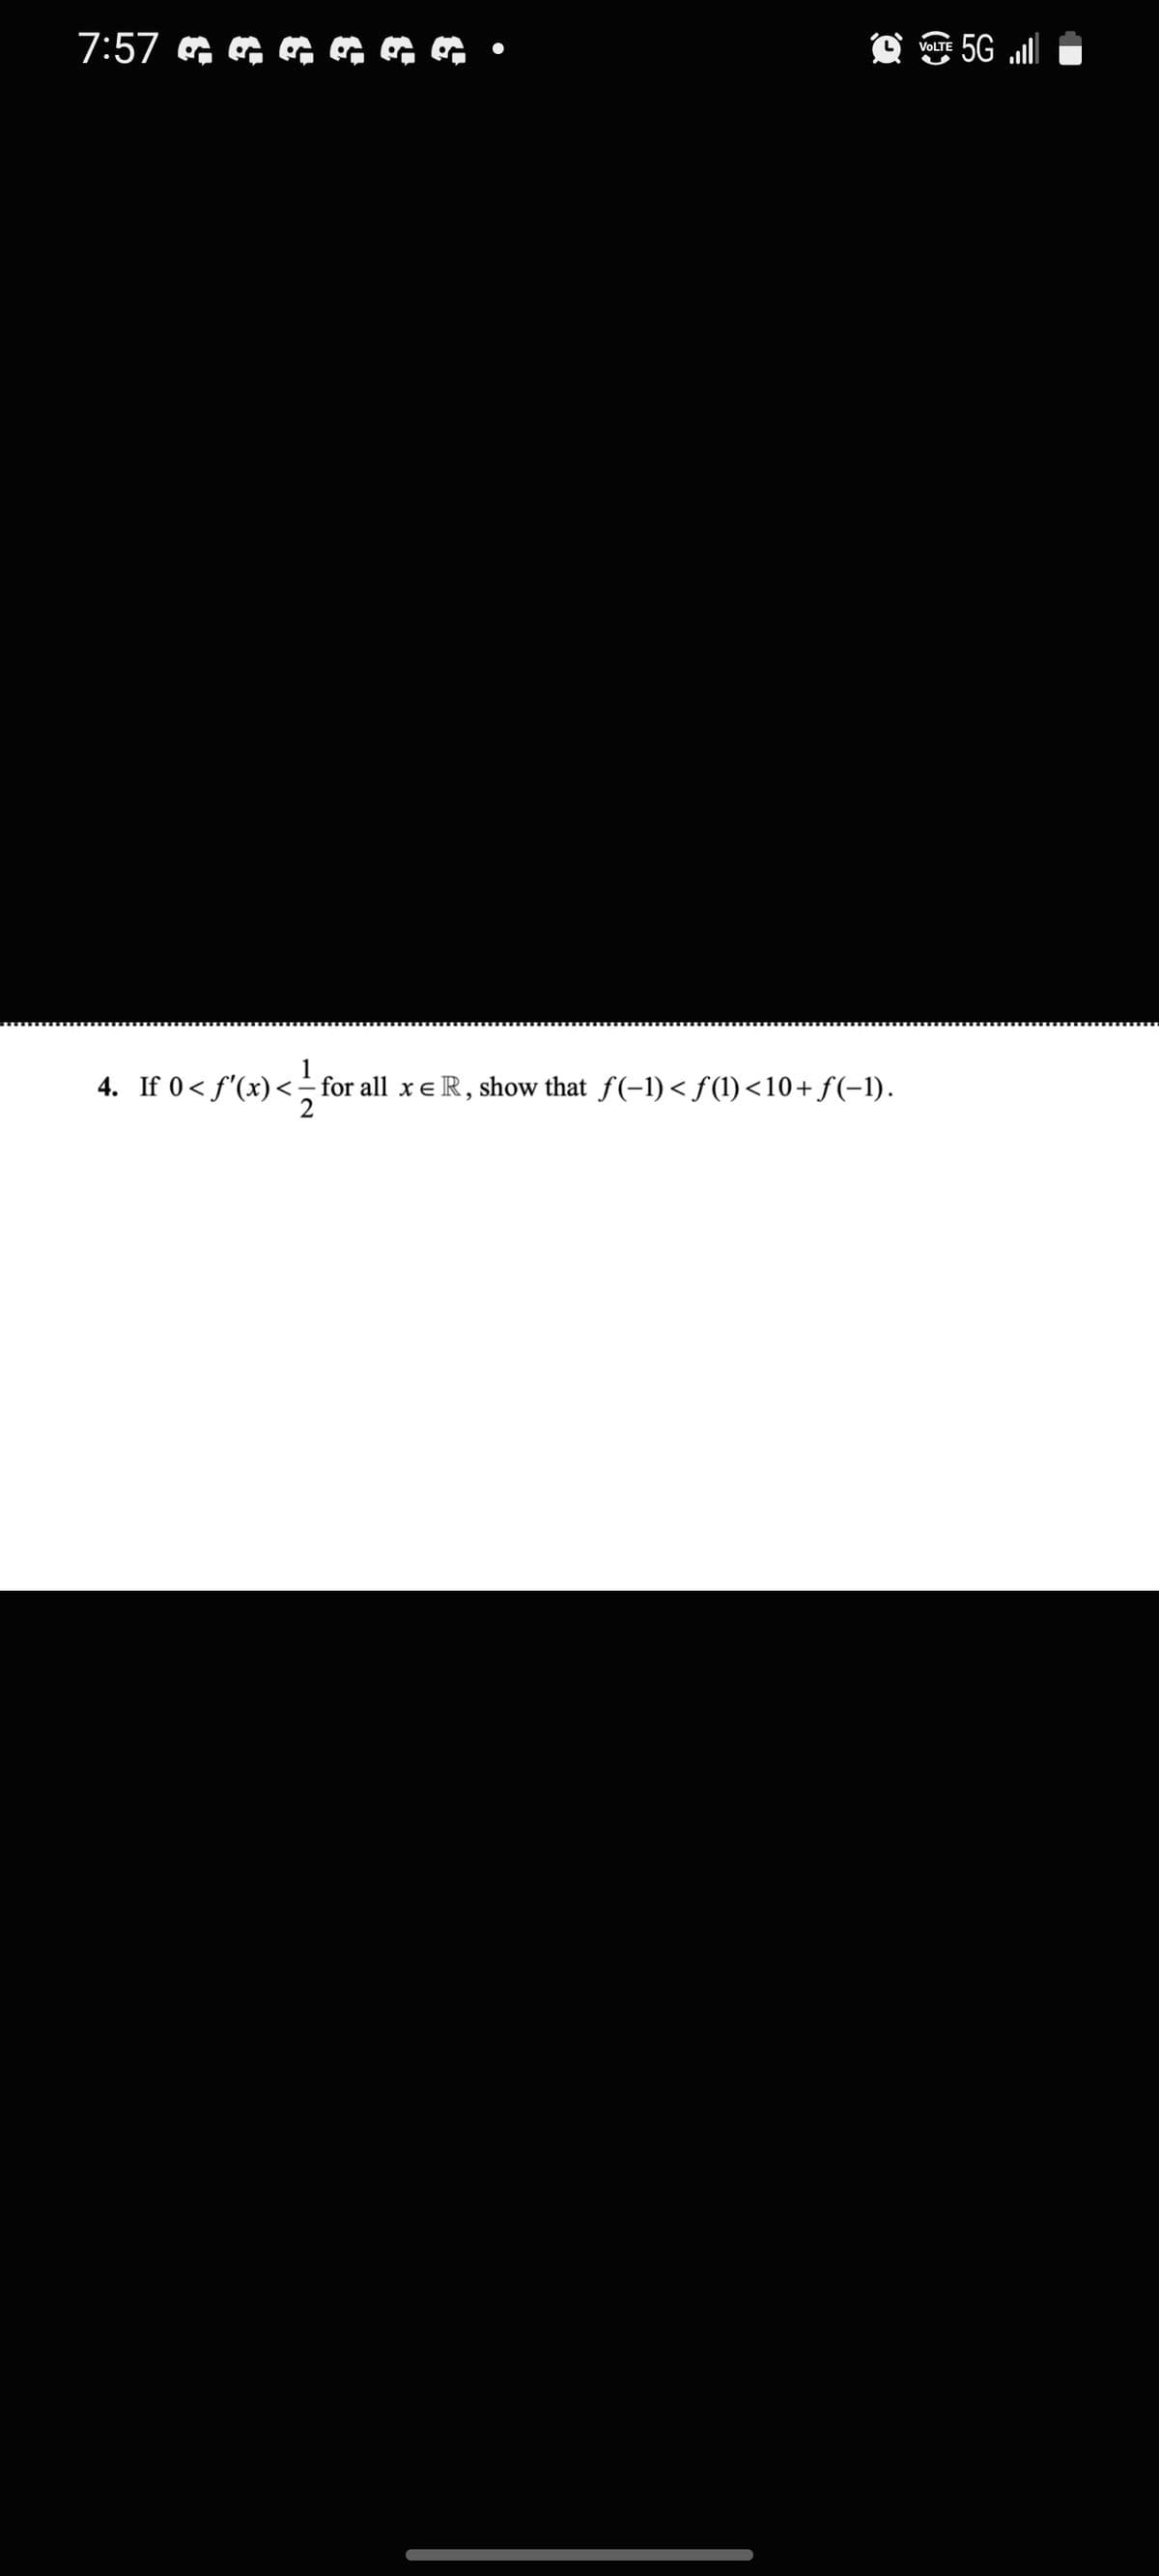 5G „ill
VOLTE
4. If 0< f'(x)
for all x eR, show that f(-1) < f(1)<10+ f(-1).
